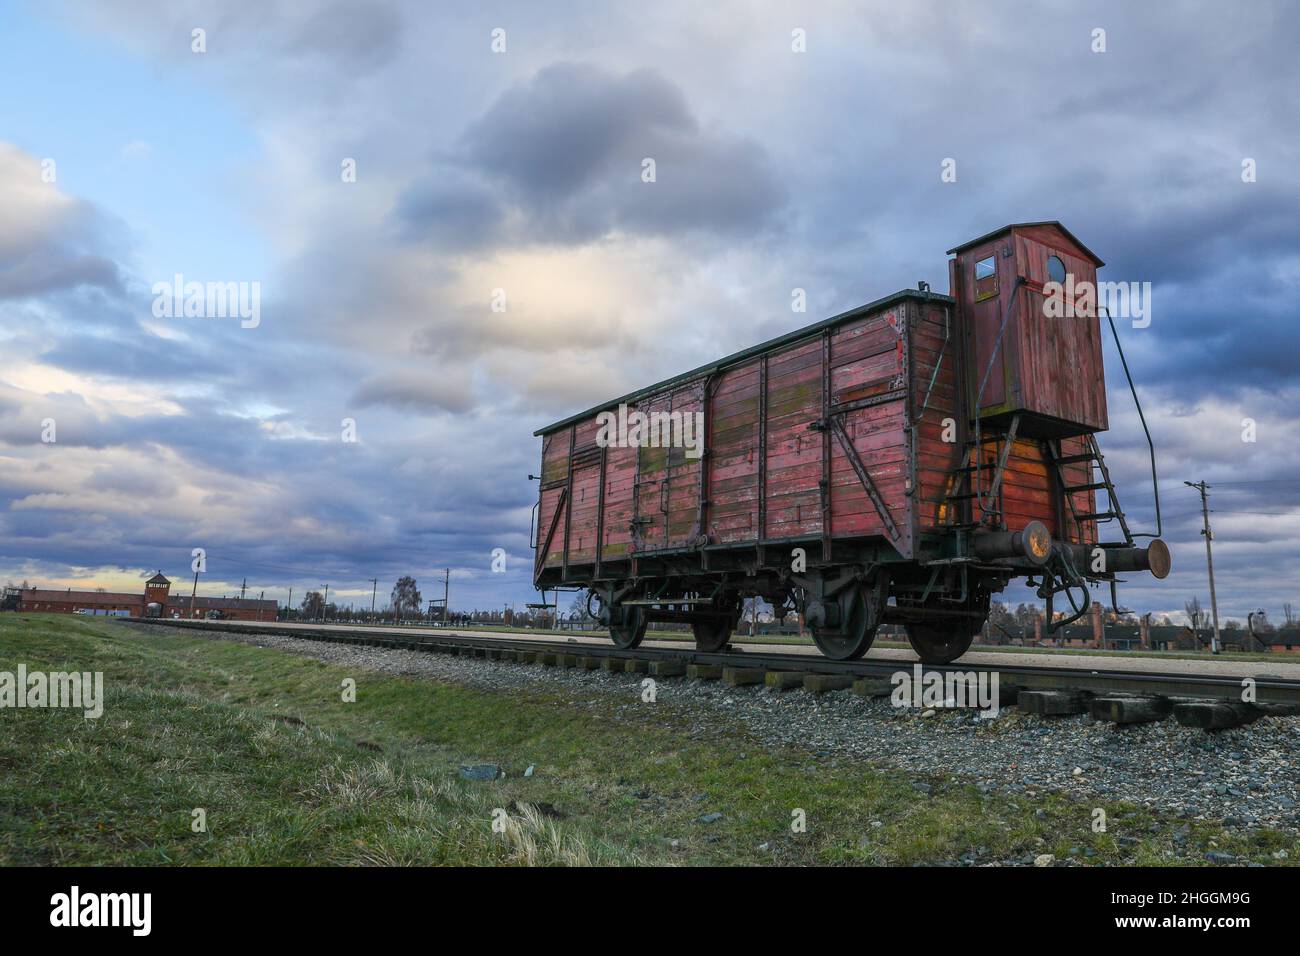 Un trasporto ferroviario originale utilizzato per le deportazioni presso l'ex campo di concentramento e sterminio nazista di Auschwitz II-Birkenau a Oswiecim, in Polonia, il 3 gennaio 2022 Foto Stock